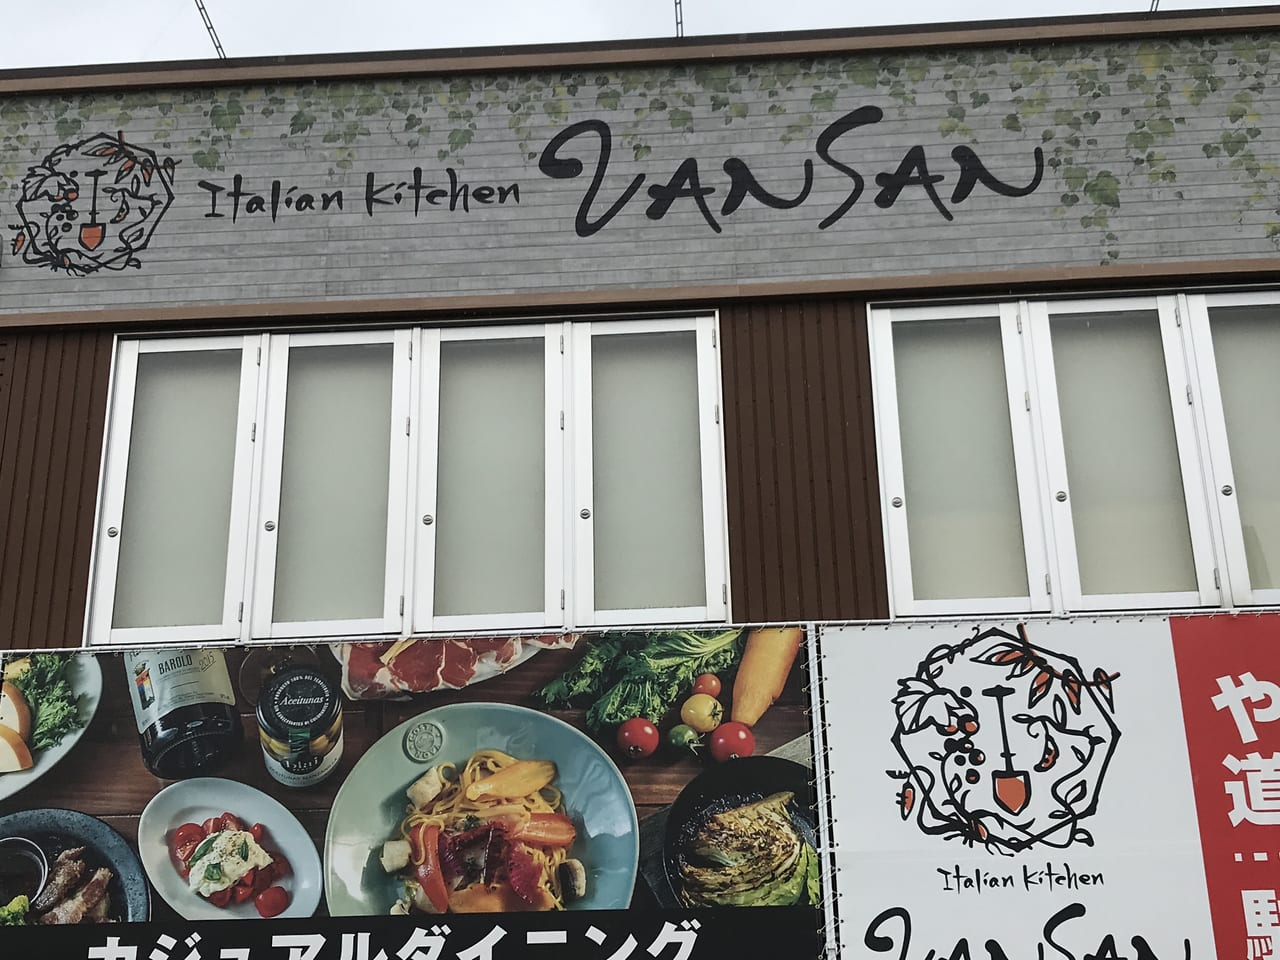 松本市 Italian Kitchen Vansan松本高宮店のオープン日がわかりました 22年3月25日グランドオープンです 号外net 松本